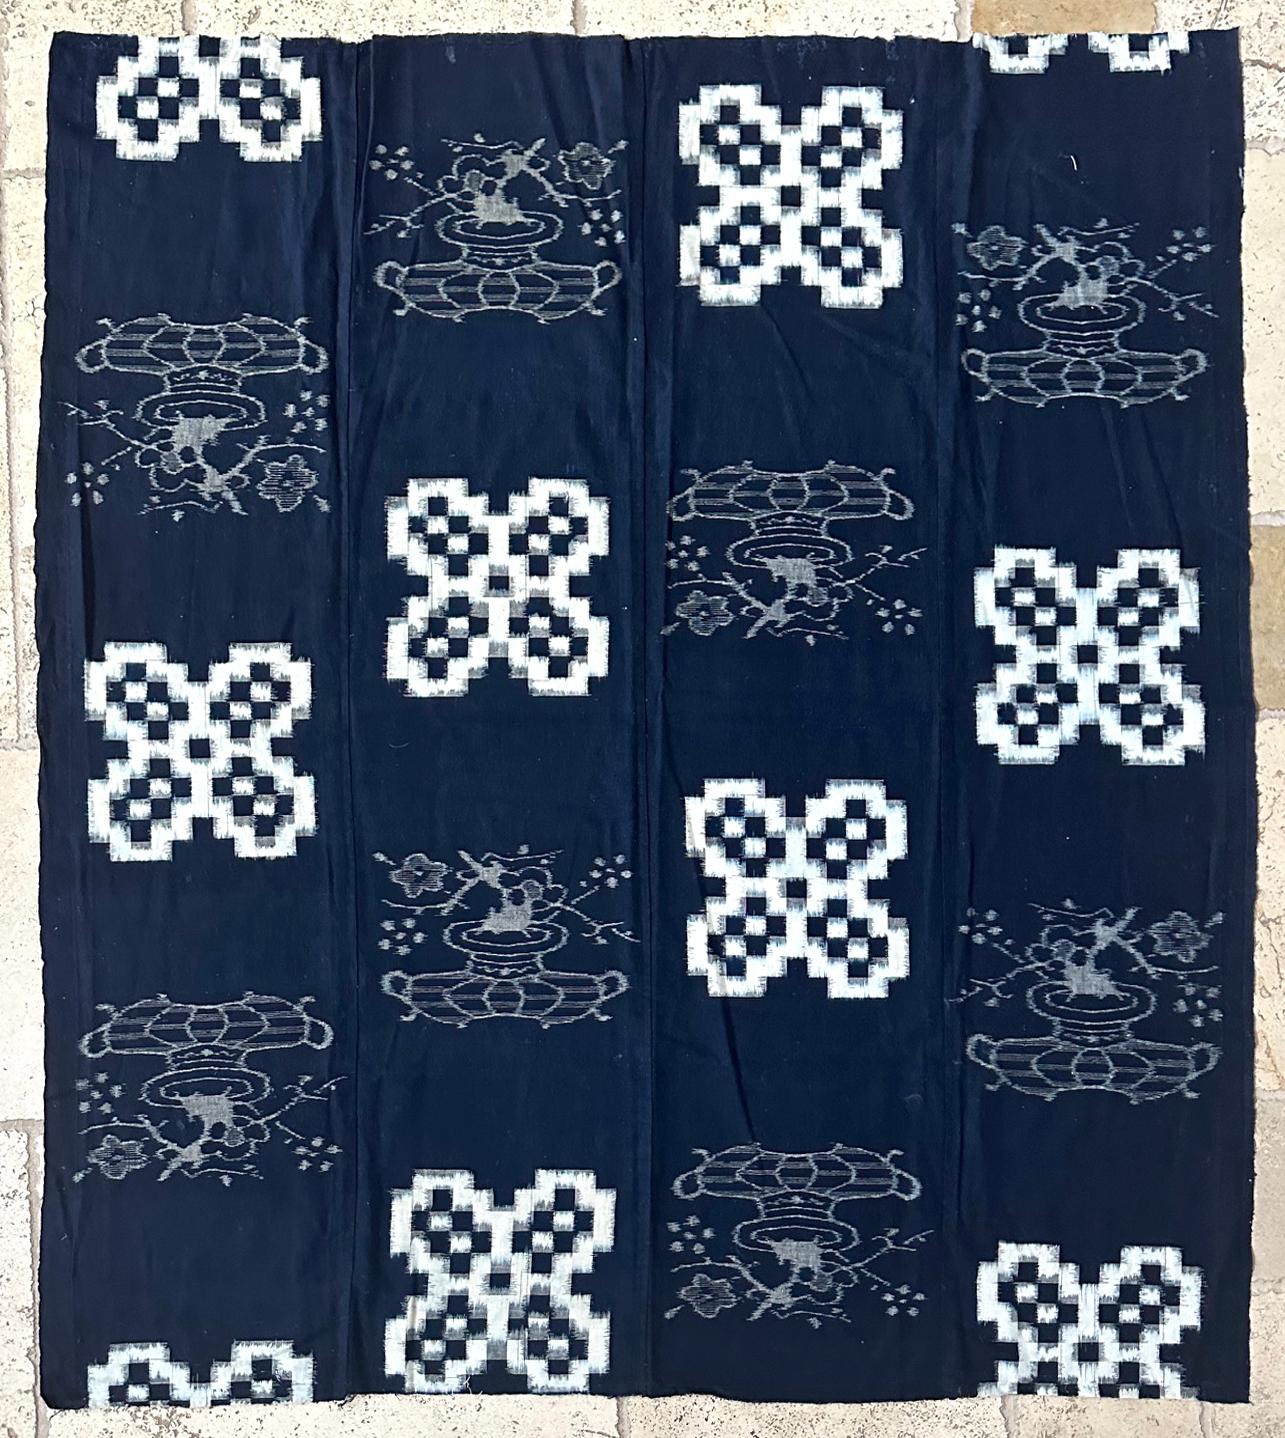 Panneau textile japonais en coton tissé à motif blanc sur fond indigo, vers 1900-20s (fin de la période Meiji à Whiting). Le panneau était relié par quatre bandes verticales et était traditionnellement utilisé pour fabriquer le Futonji (couverture